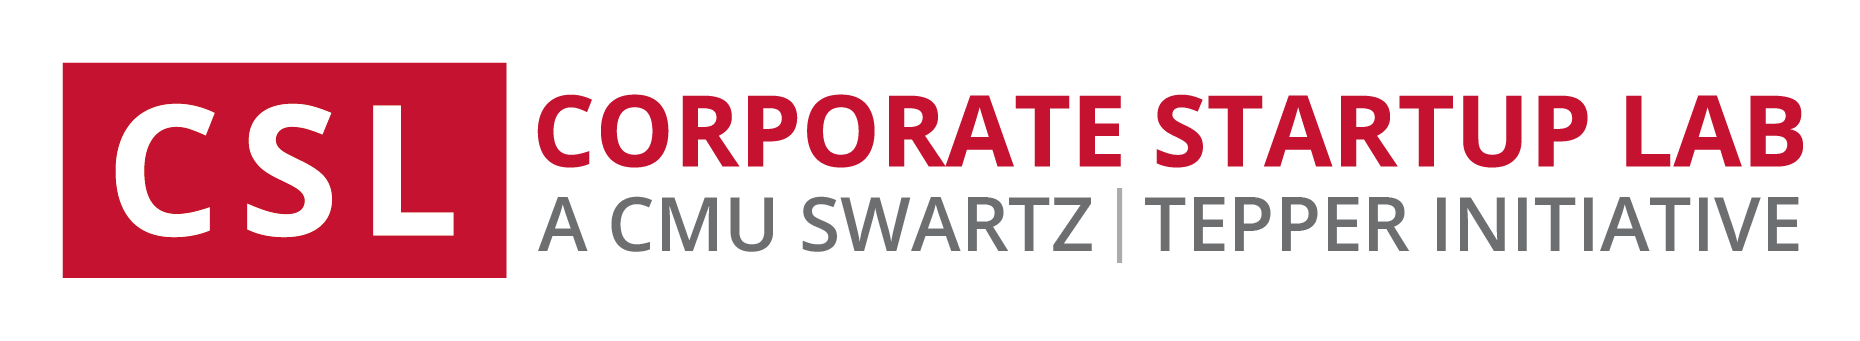 csl-swartz-center-initiative_cmu-red.png